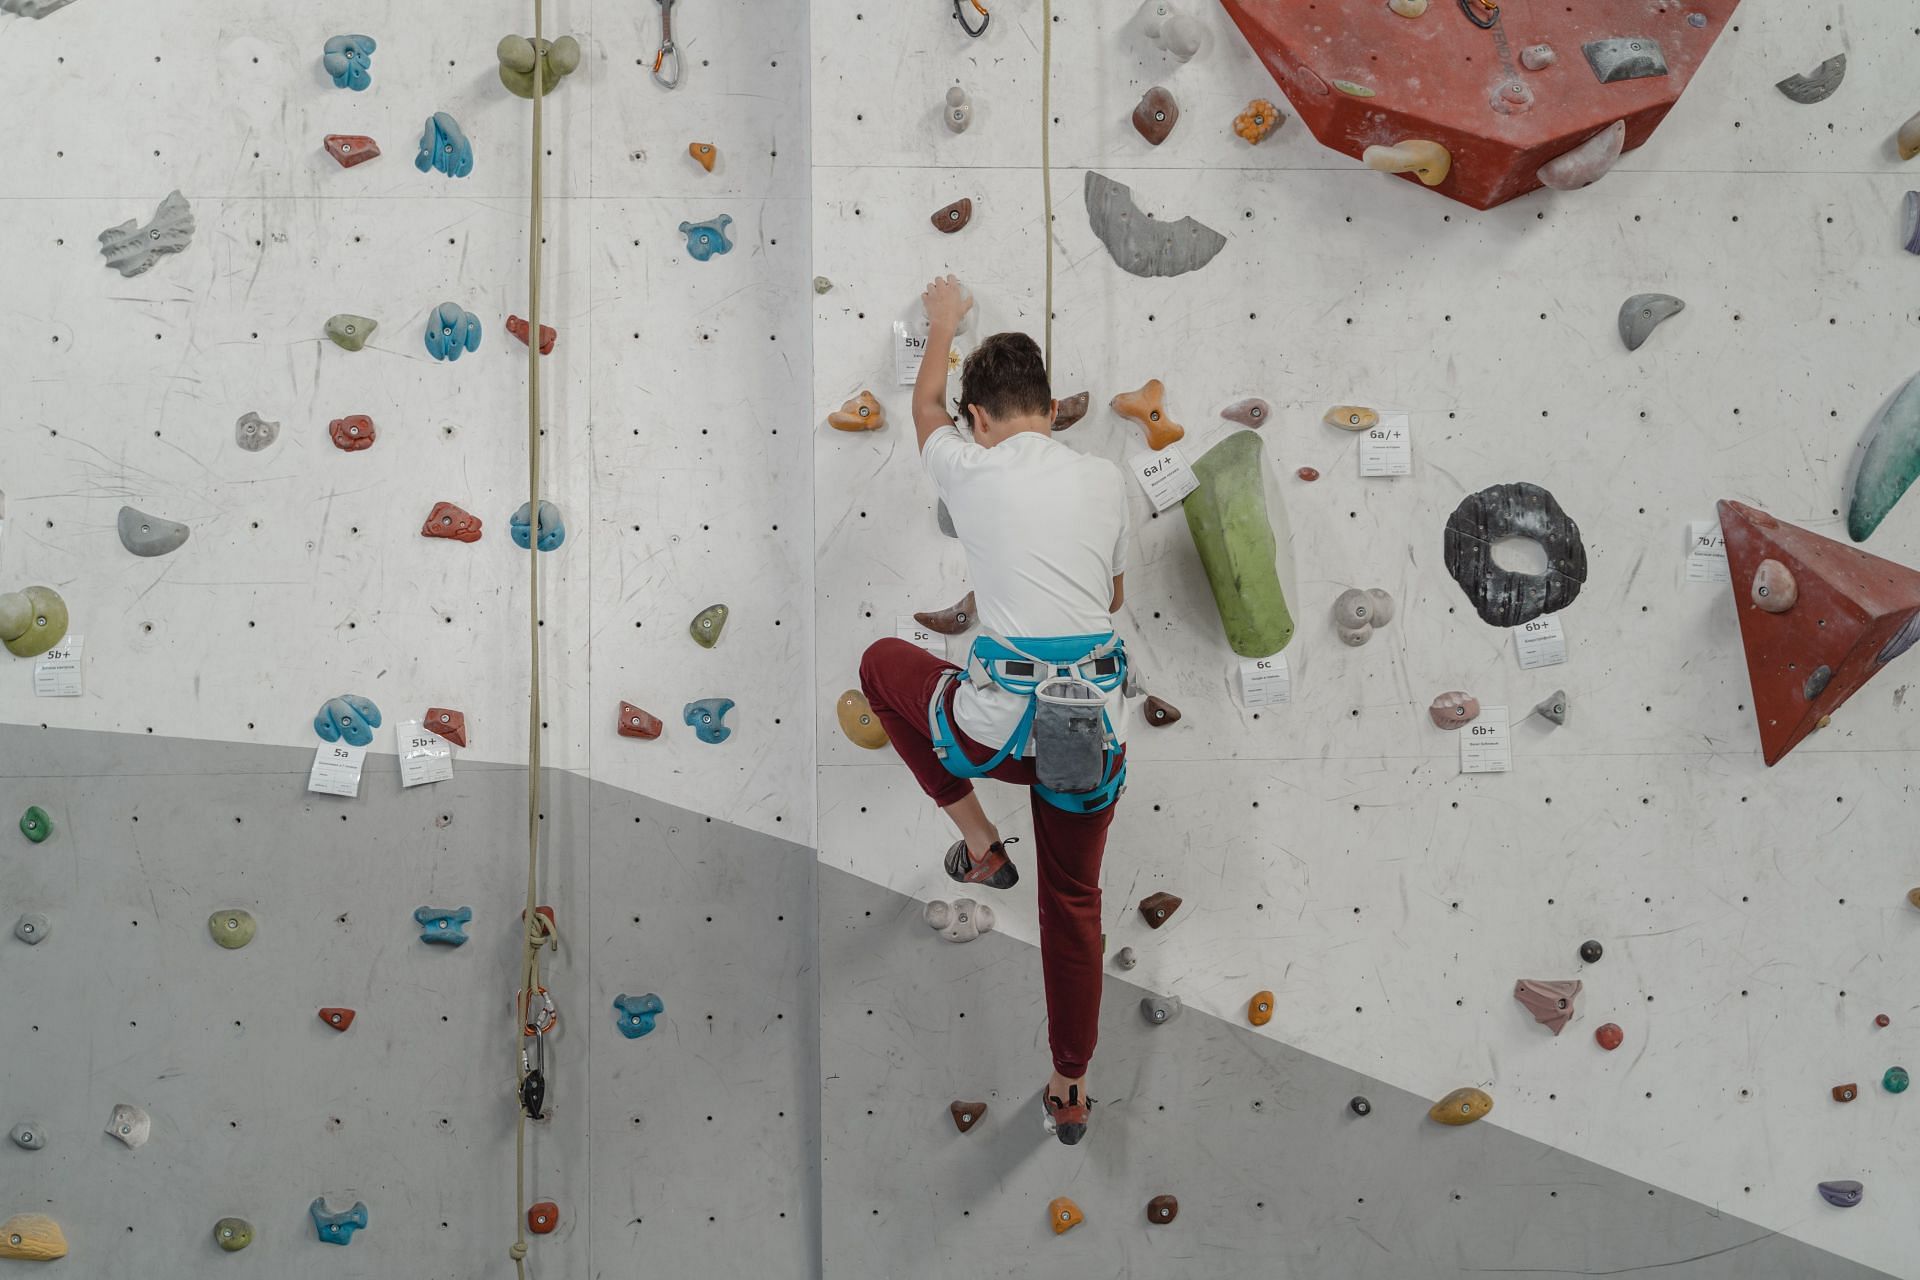 This exercise imitates the same motion as climbing of the mountain. (Image via Pexels/ Tima Miroshnichenko)